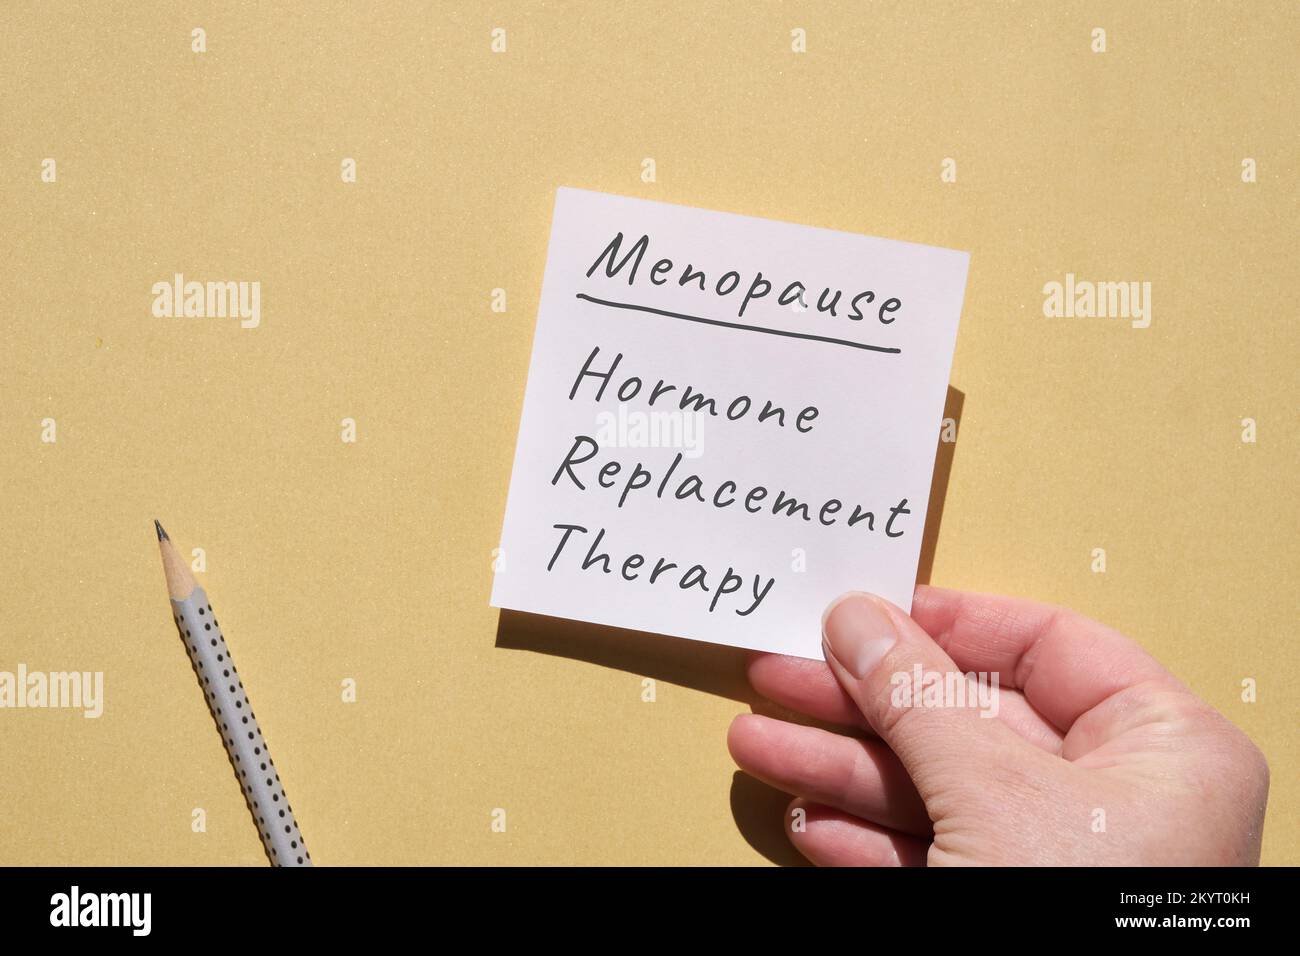 Handgehaltene Papierseite mit Text Menopause, Hormonersatztherapie. Draufsicht auf gelbem einfarbigem Papierhintergrund mit Bleistift. Schreiben auf Blankoschreibung Stockfoto